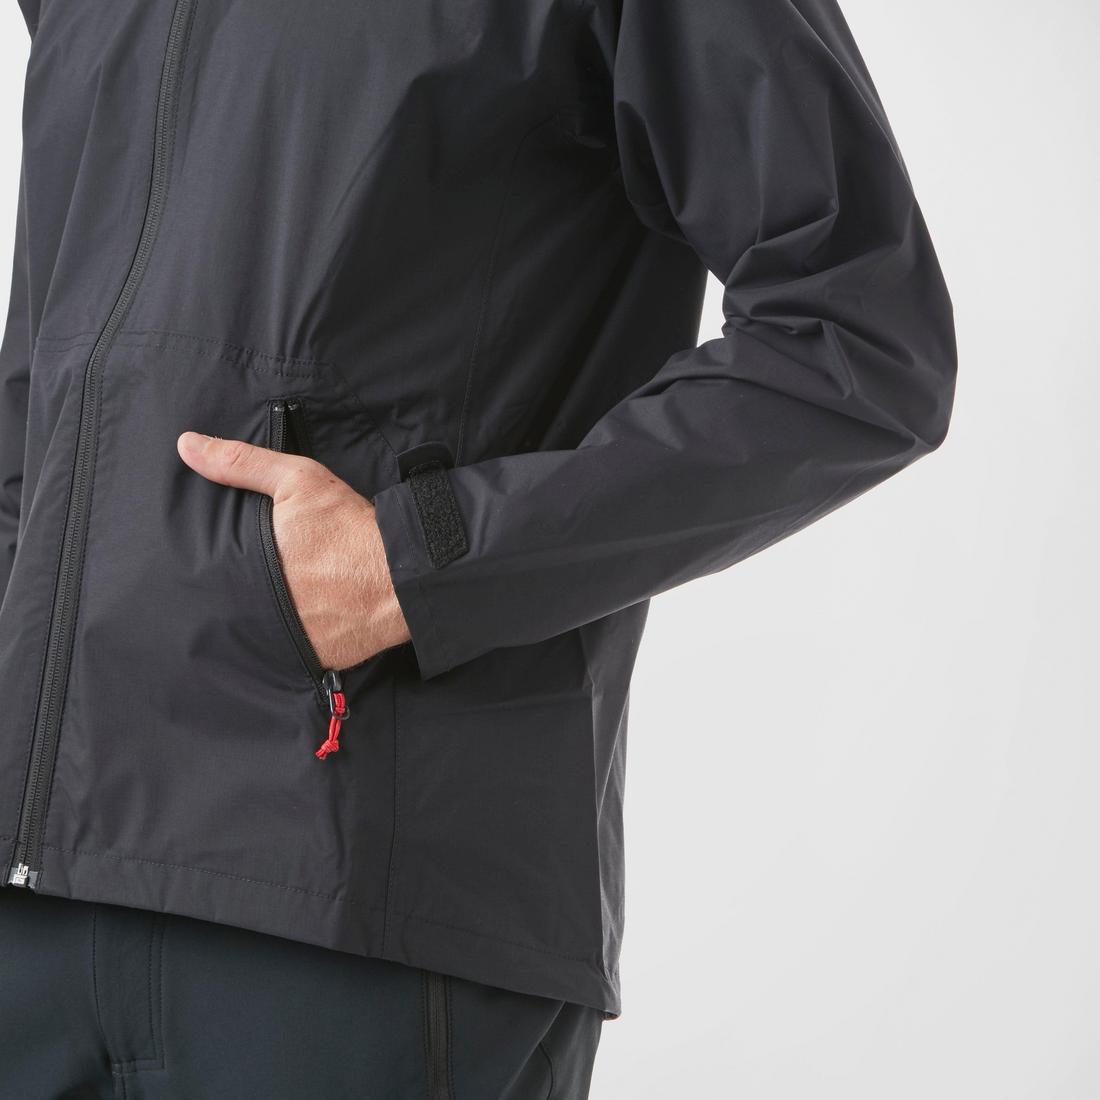 Men's Long sleeve waterproof jacket FO22-W029 - Waterproof Jacket ...